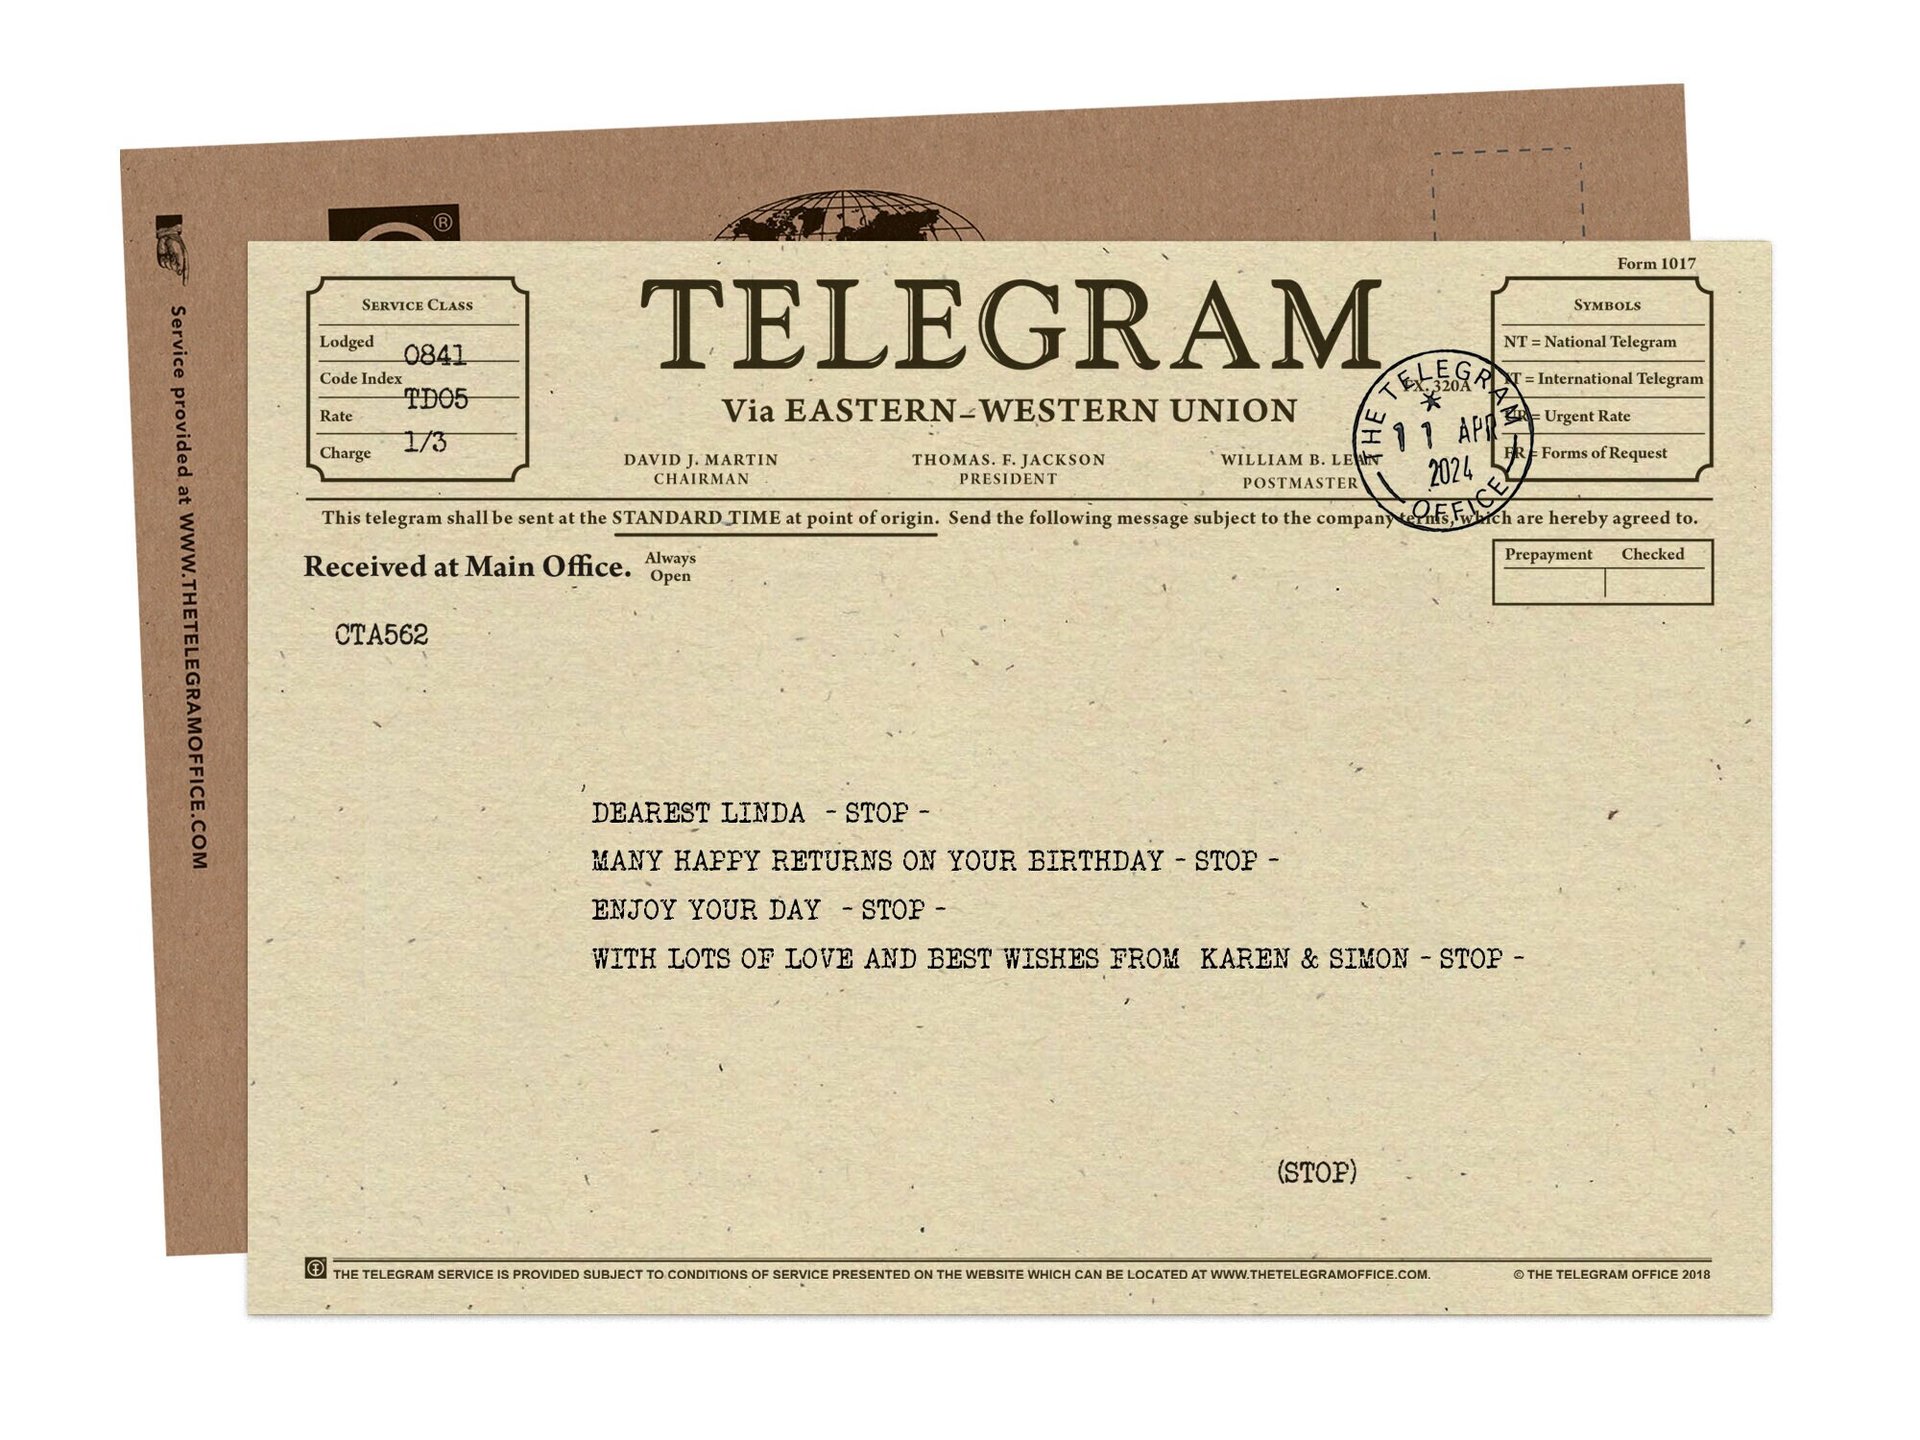 Send Greetings by Telegram - Eastern-Western Union